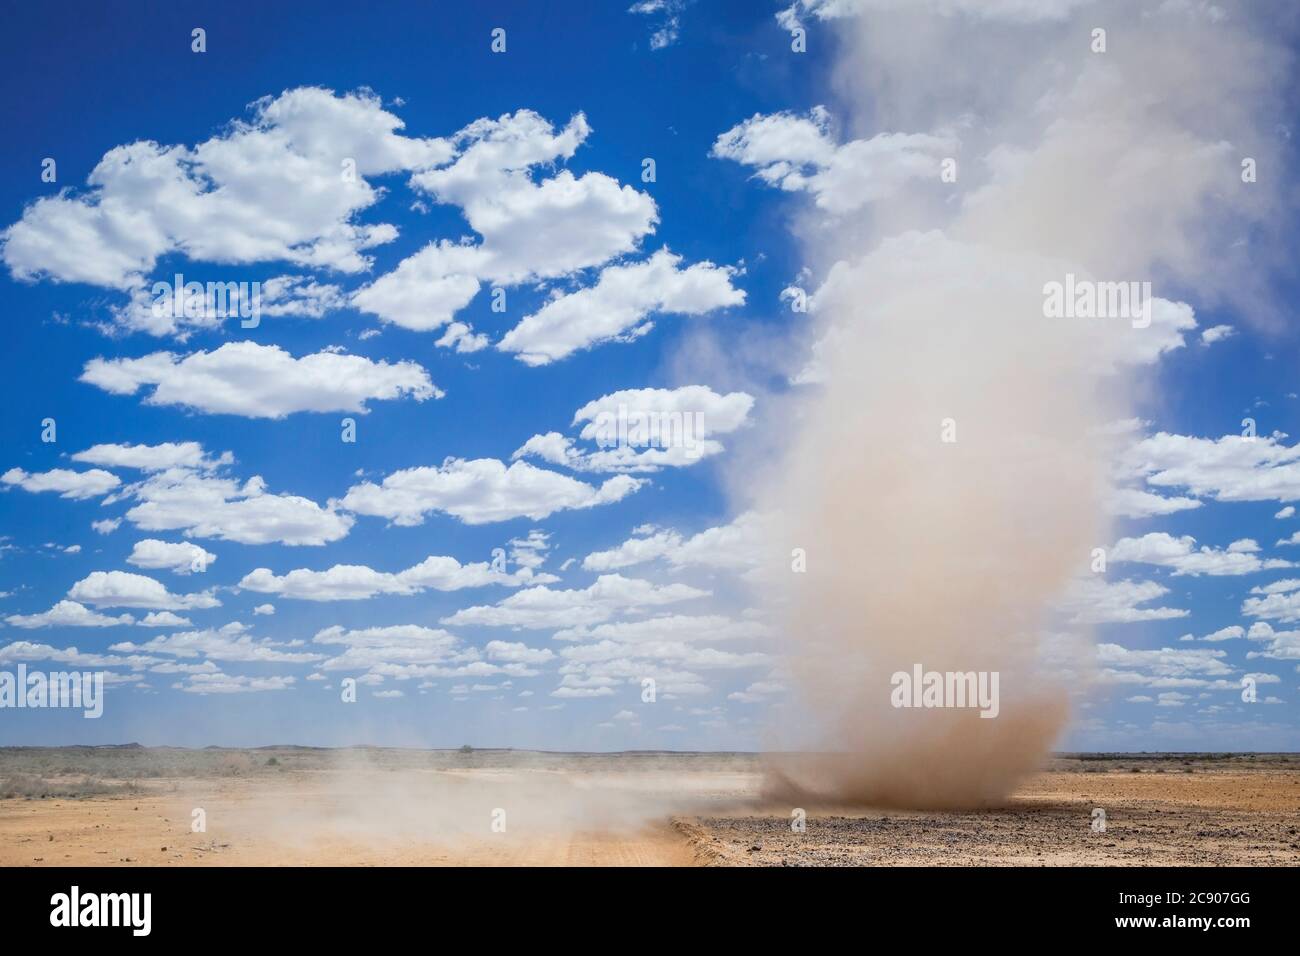 Mini tornade tourbillonnante près de la ville désertique australienne de l'Outback, Marree, tempête de sable, nuages moelleux et ciel bleu avec espace de copie, Australie méridionale Banque D'Images